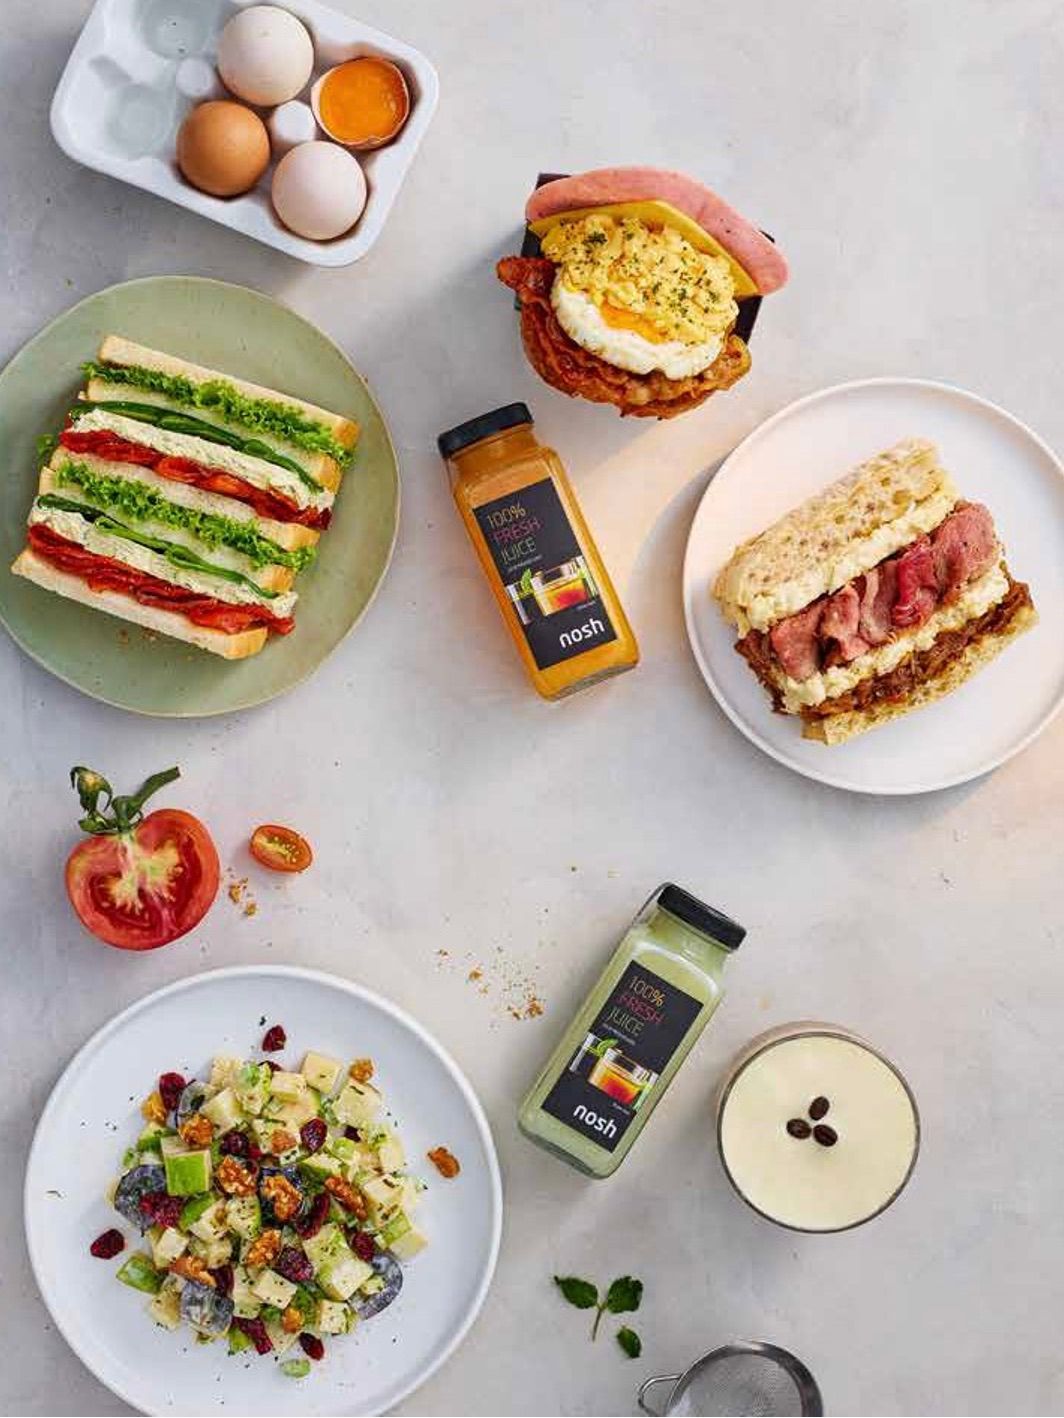 NOSH – Nhà hàng chuyên về bánh mì sandwich và salad